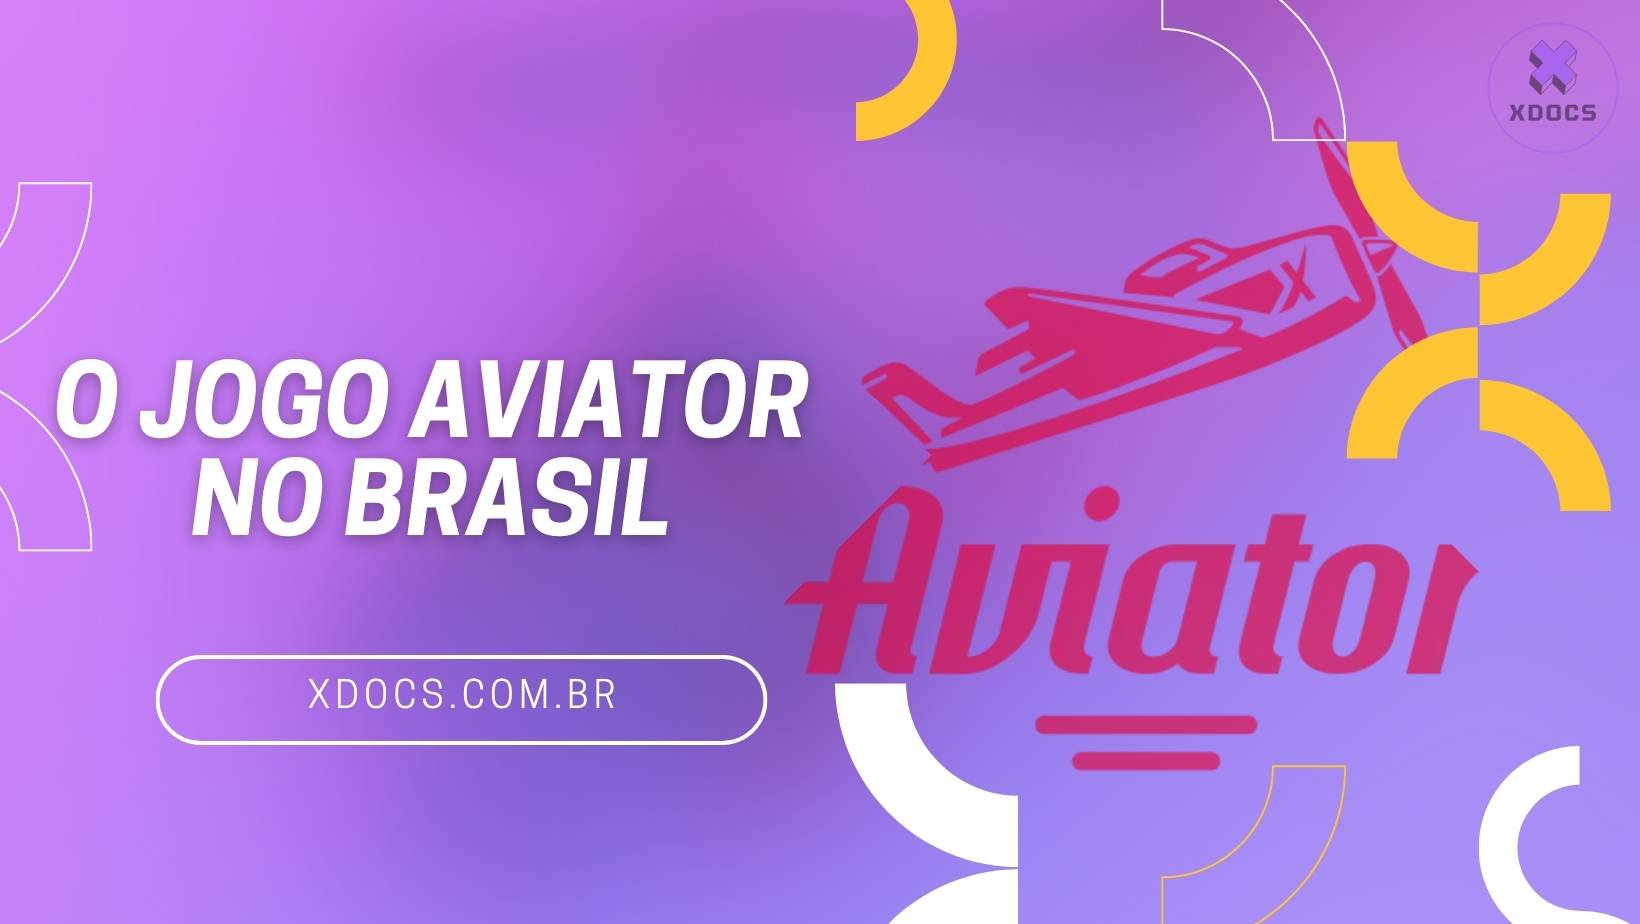 o jogo aviator no brasil